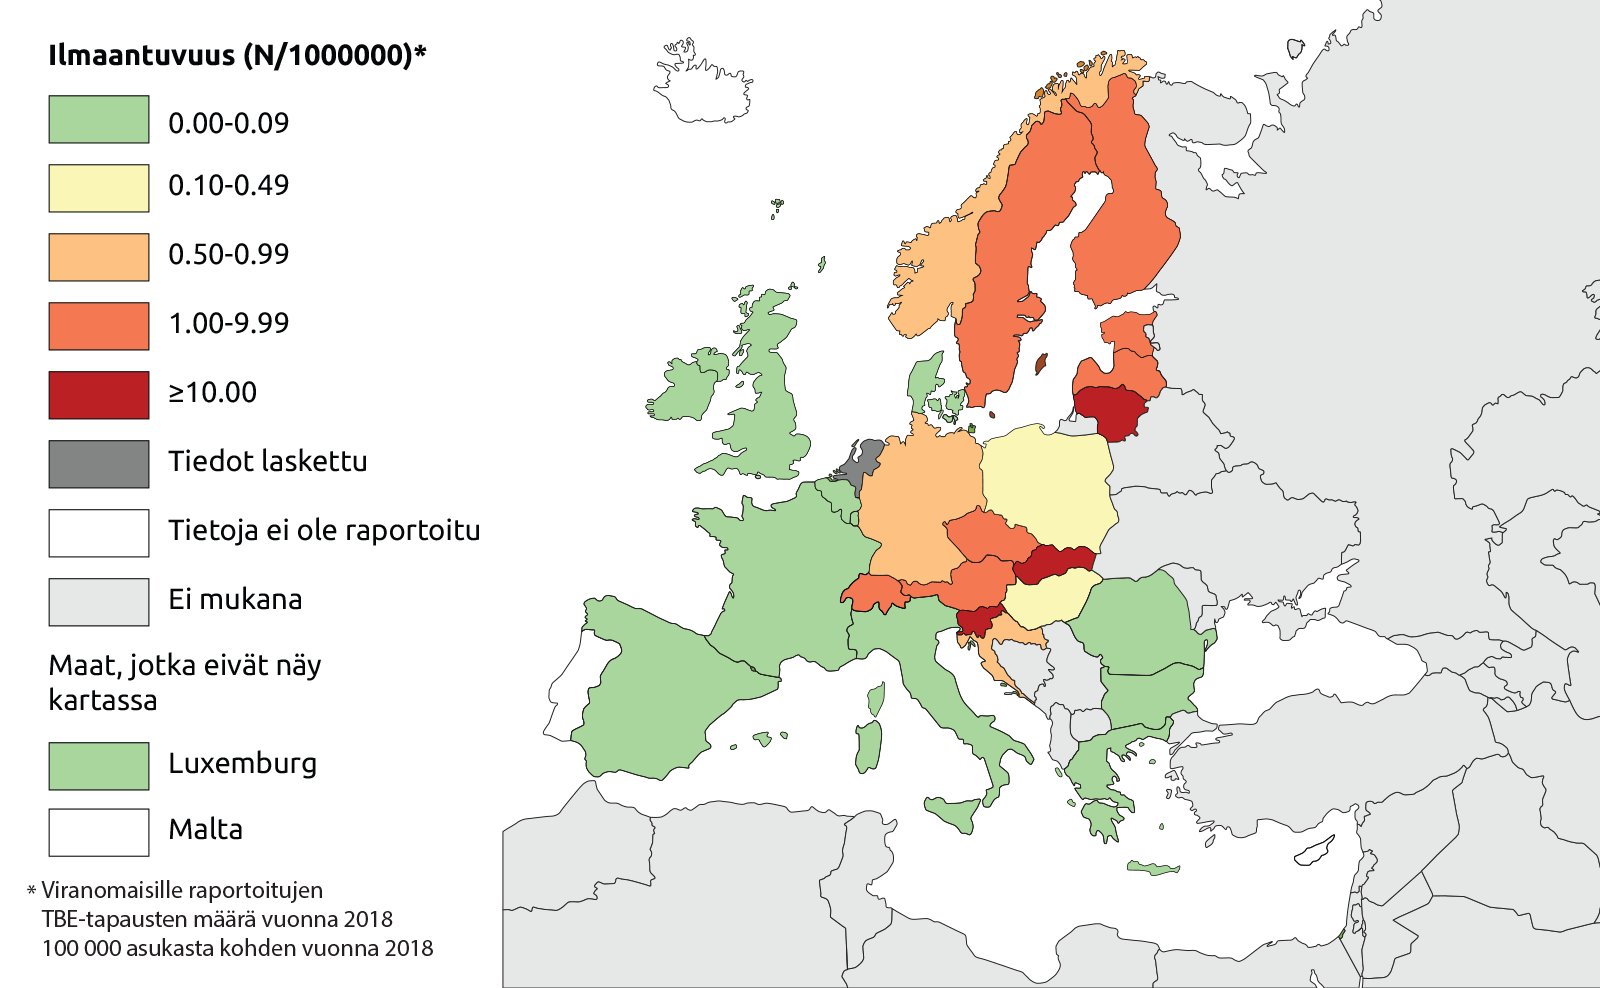 Puutiaisaivotulehduksen esiintyvyys Euroopassa